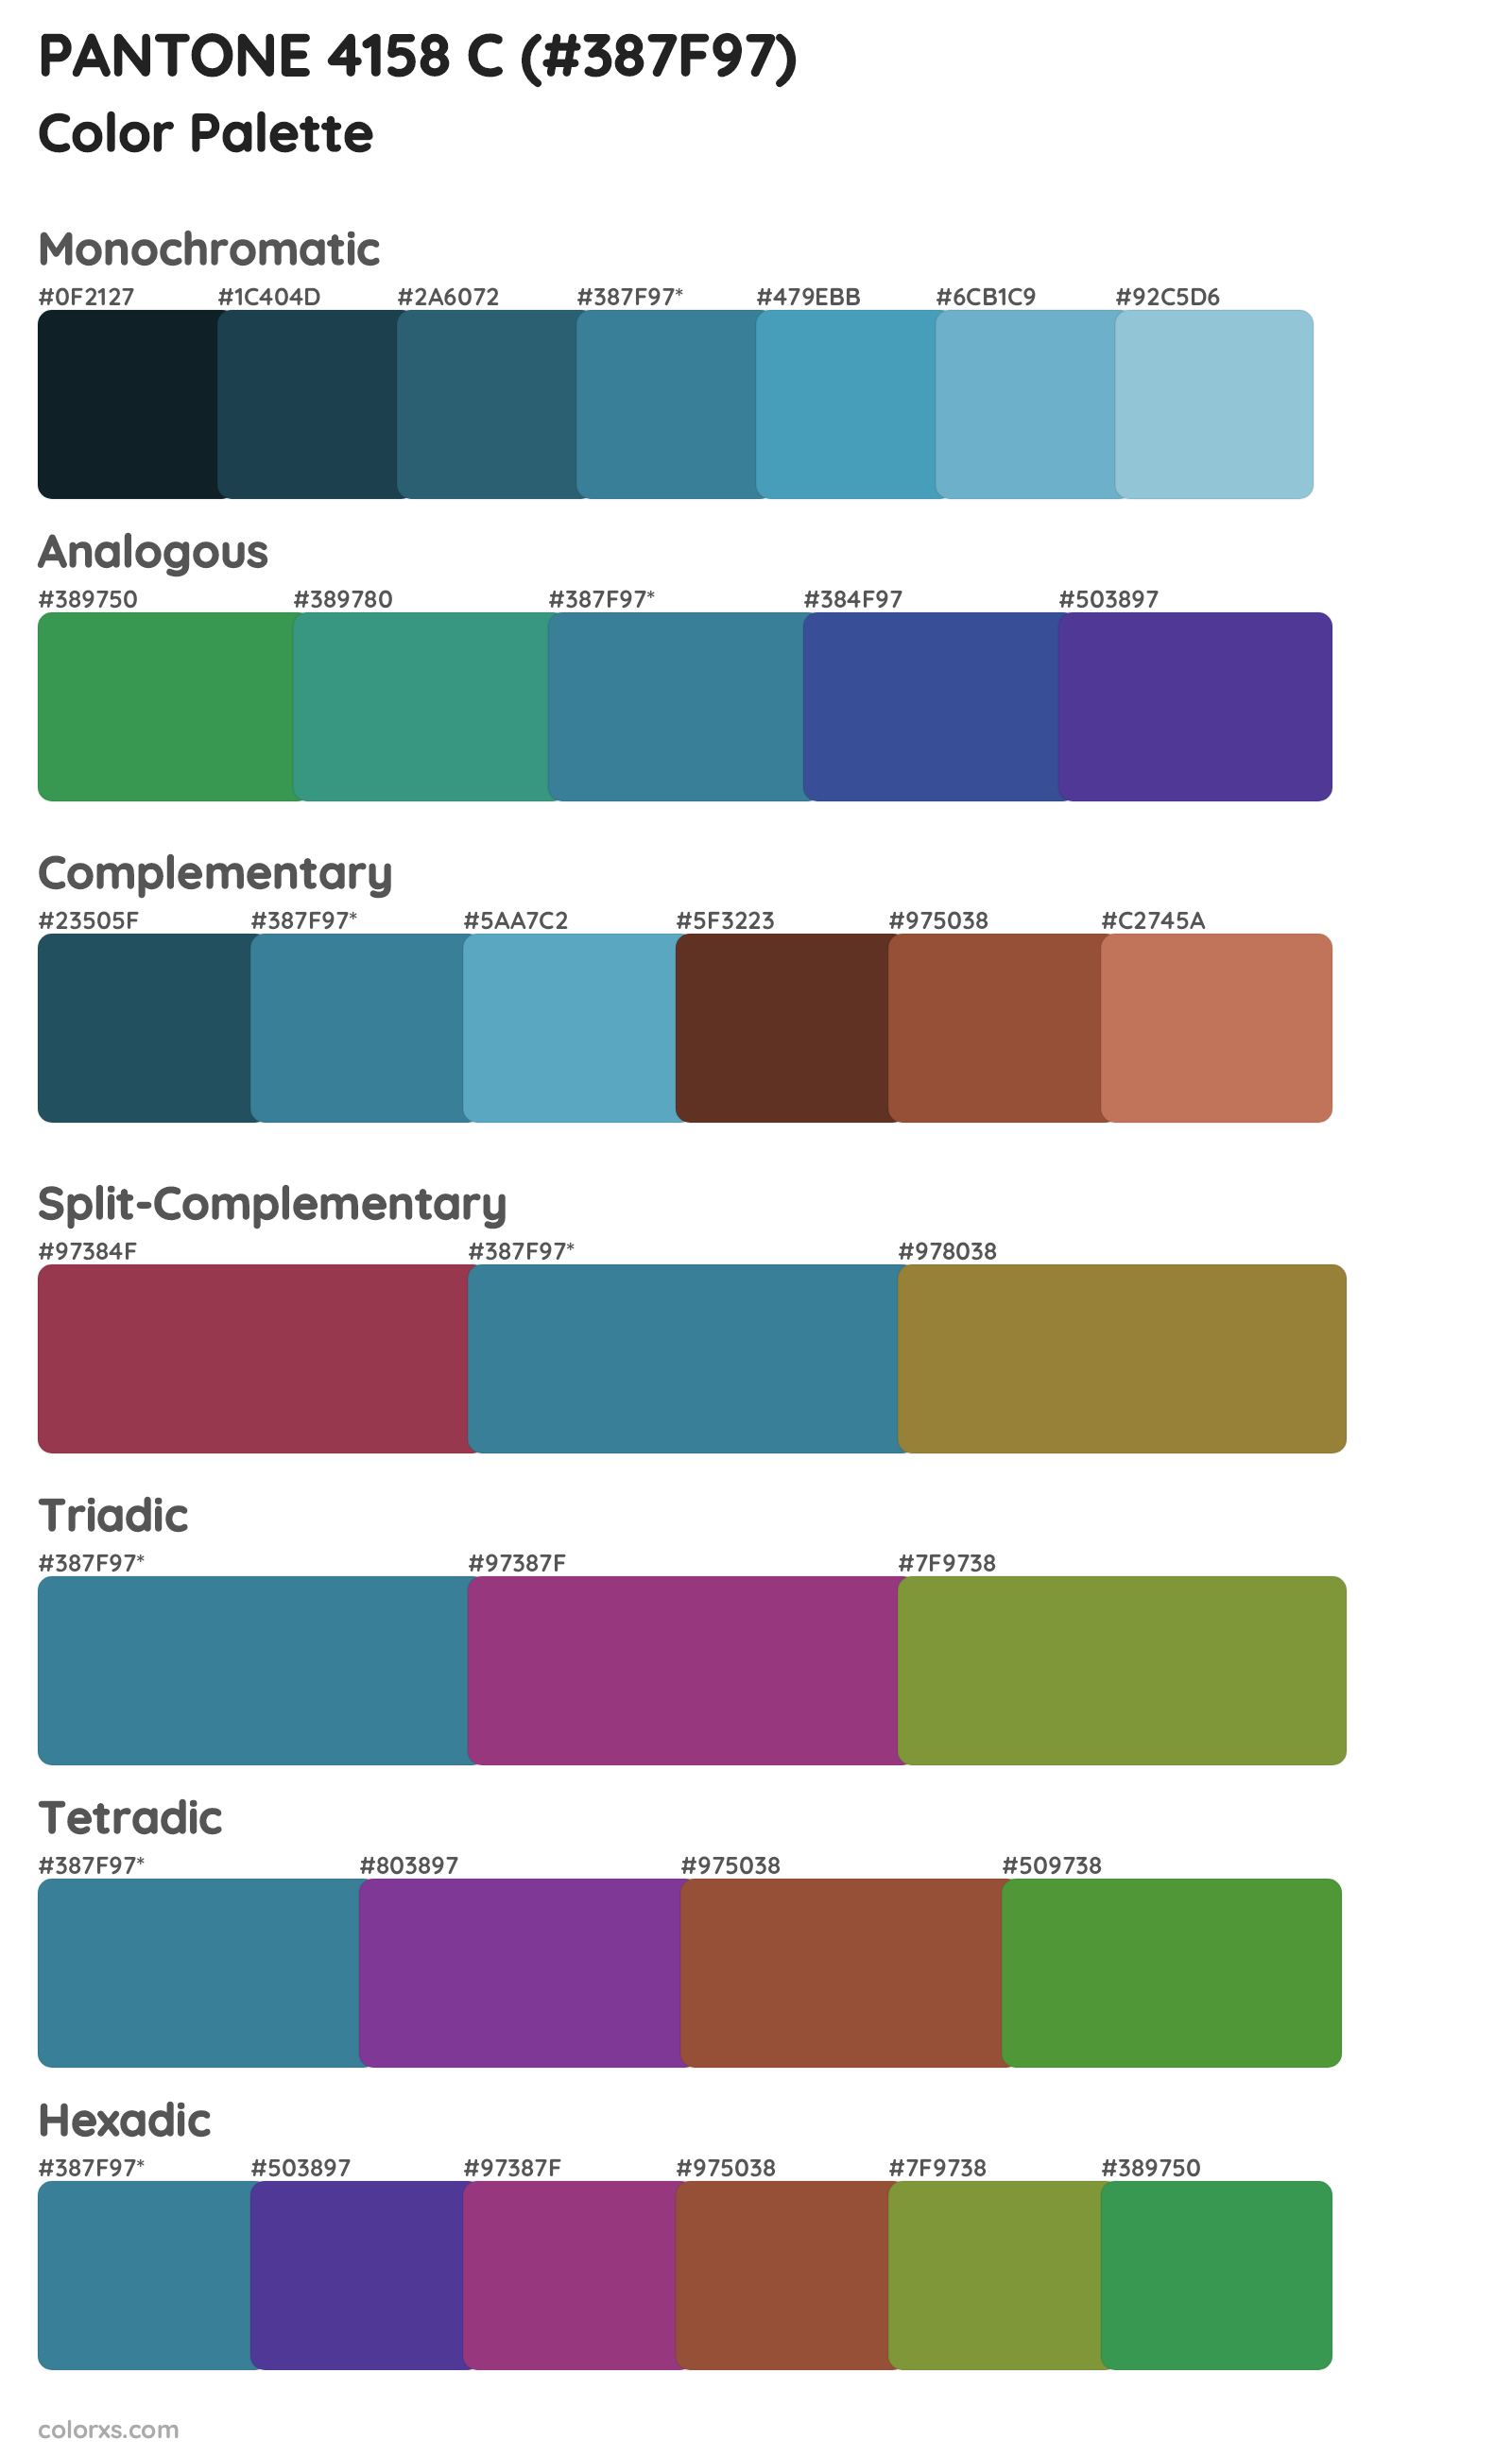 PANTONE 4158 C Color Scheme Palettes